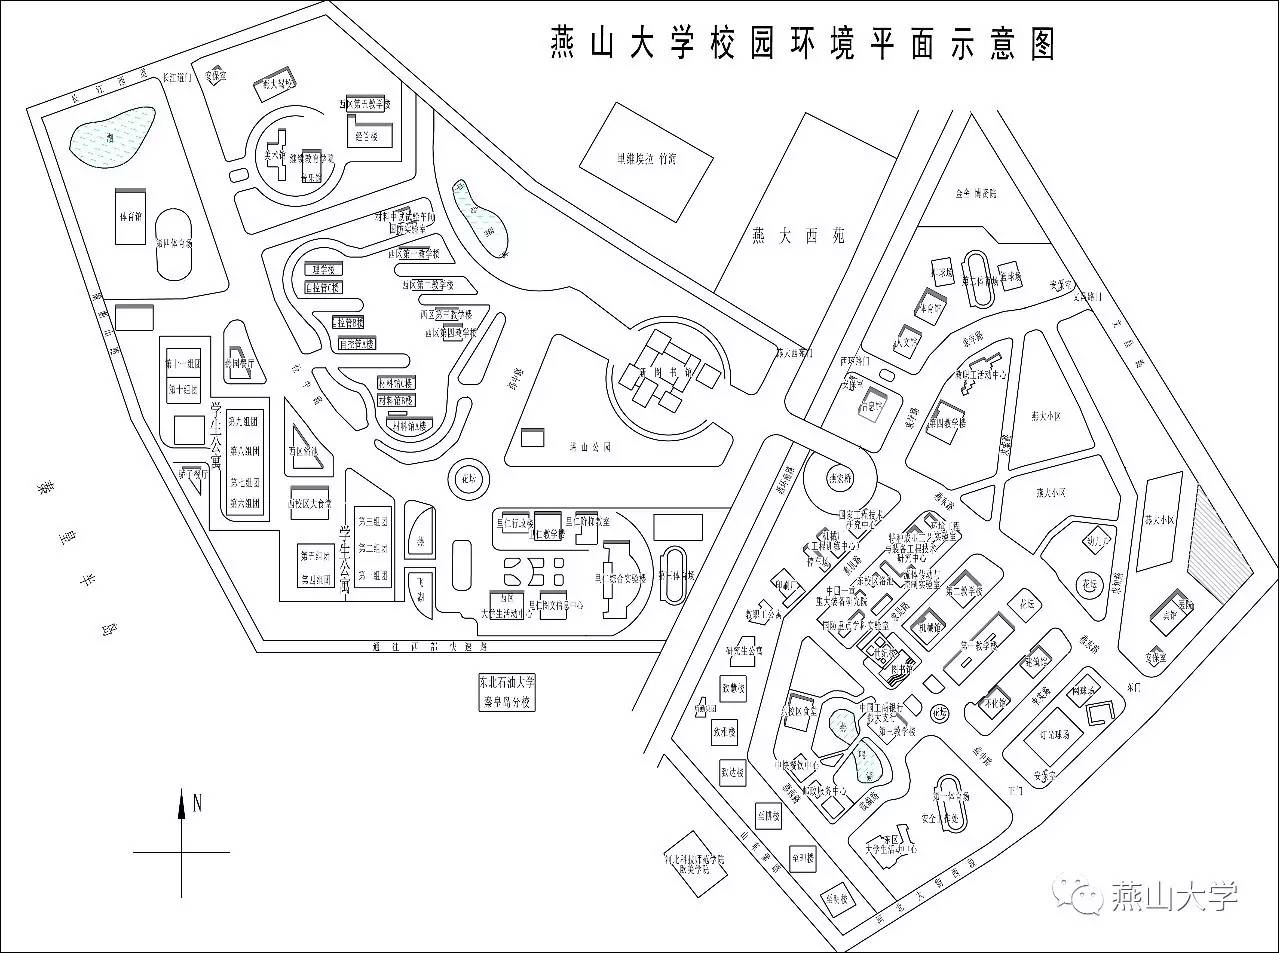 燕山大学地理位置地图图片